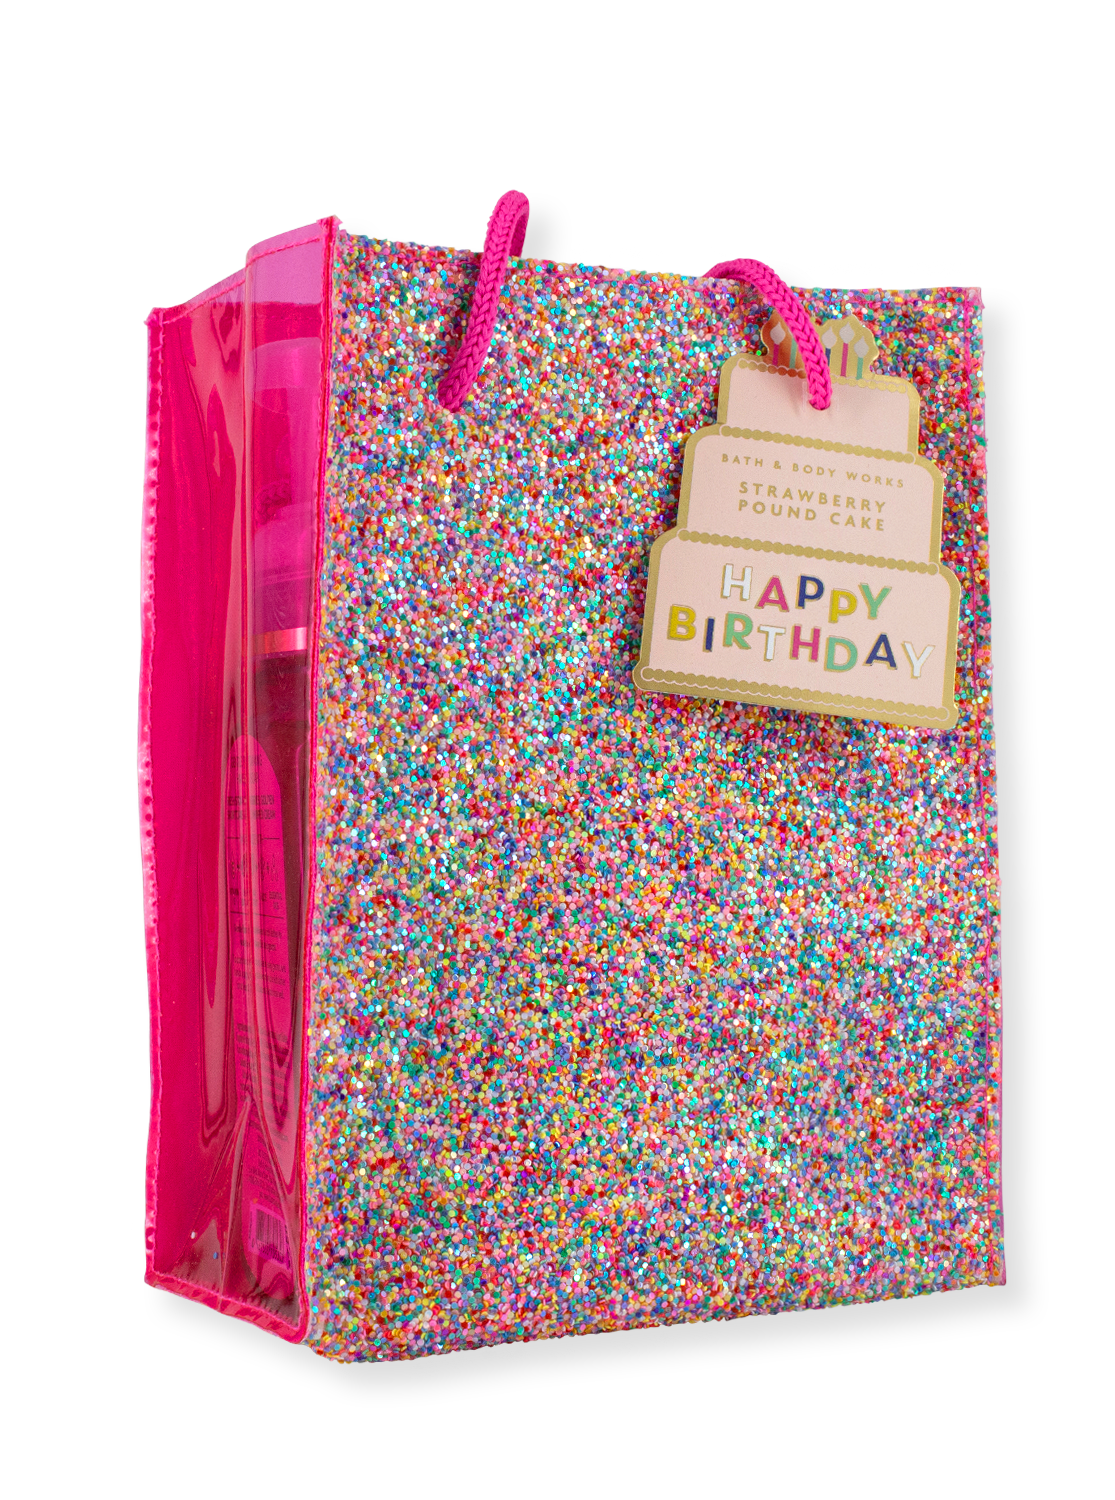 Gift bag - Happy Birthday - Strawberry Pound Cake - 259ml/198g